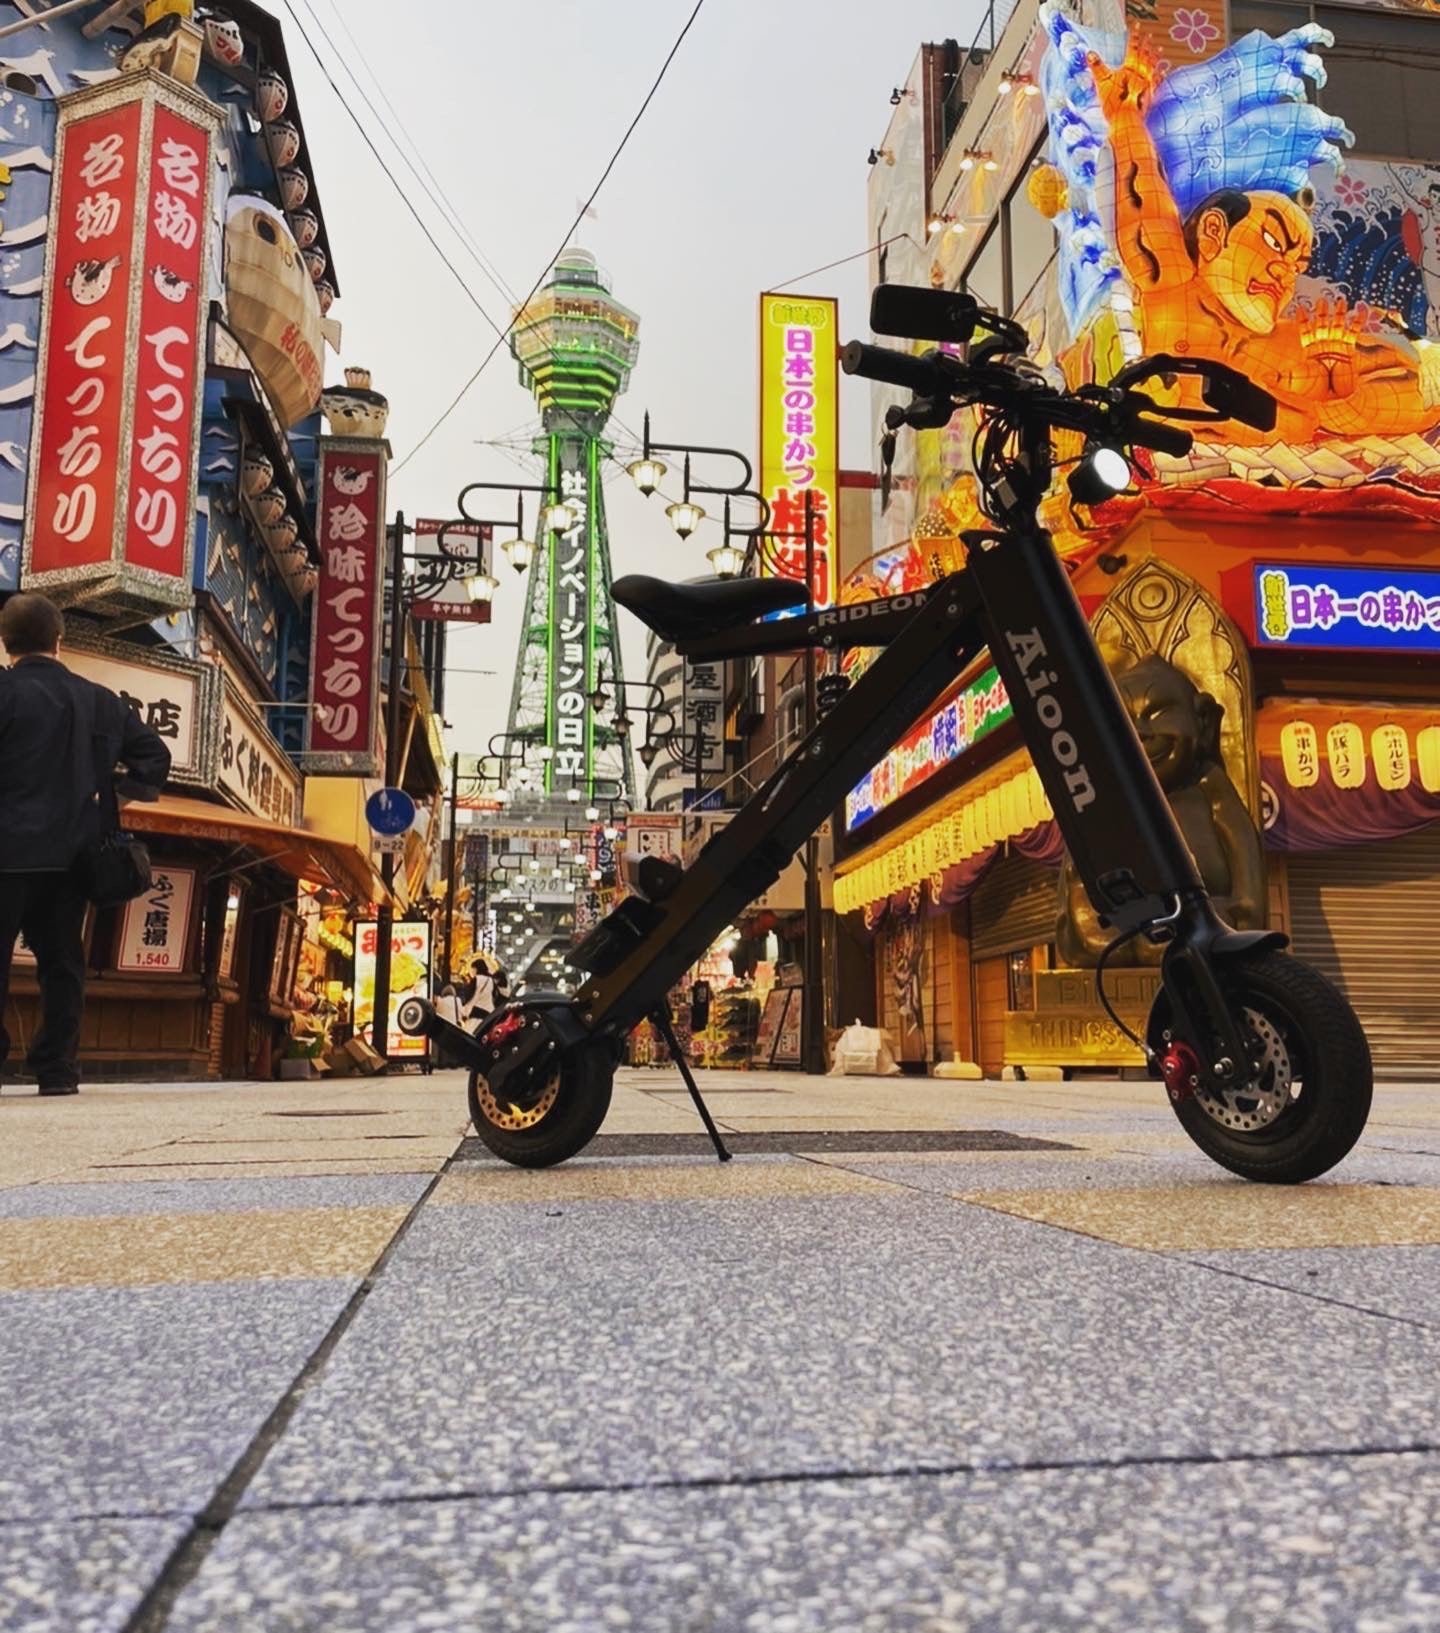 【公式】「Aioon -01アイオーン」常識外れ！公道走行可能な電動バイク・折りたたみSTYLISH EV BIKE